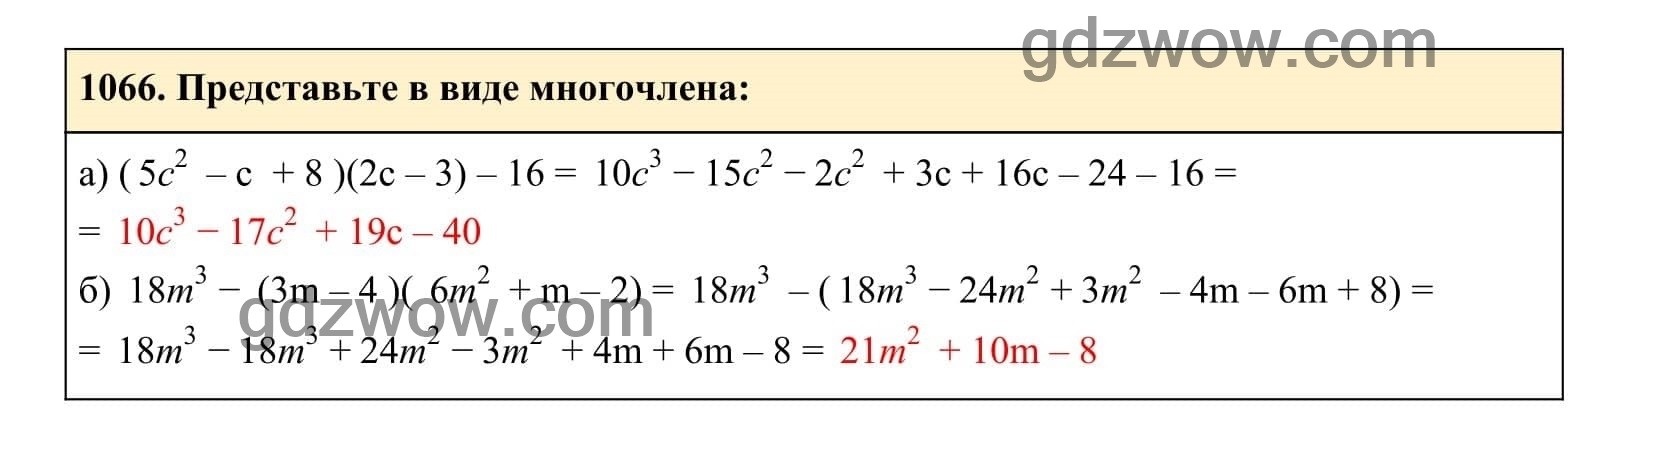 Упражнение 1066 - ГДЗ по Алгебре 7 класс Учебник Макарычев (решебник) - GDZwow